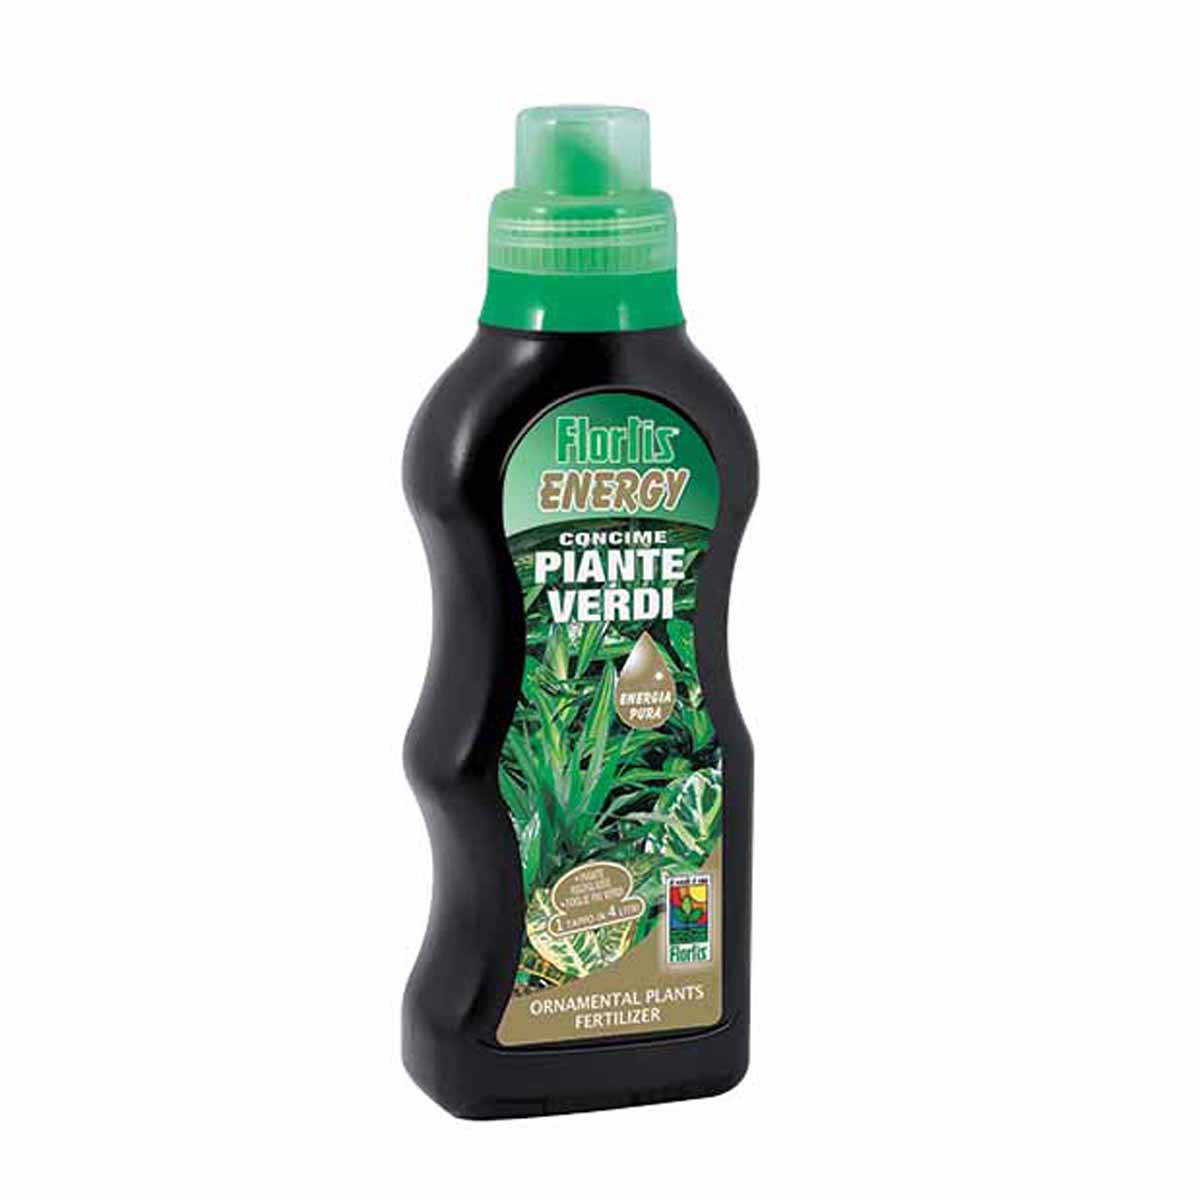 Flortis Energy Concime liquido Piante Verdi 500g